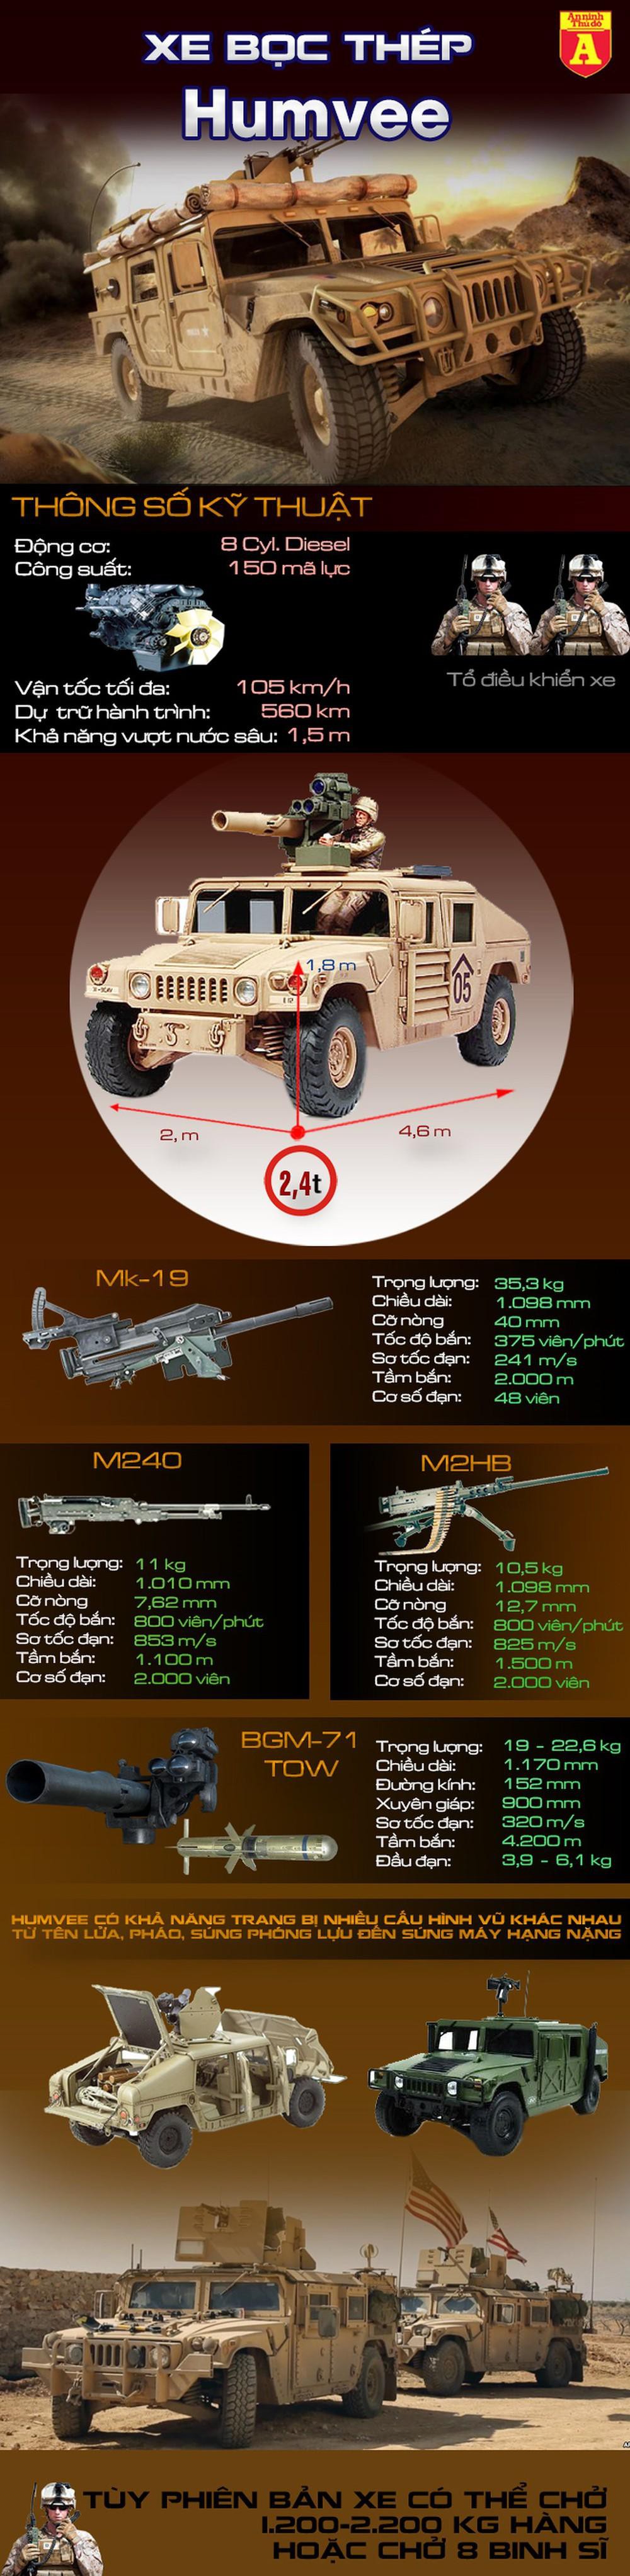  [Infographics] Humvee - dòng xe hay bị mất trộm nhất của quân đội Mỹ  - Ảnh 1